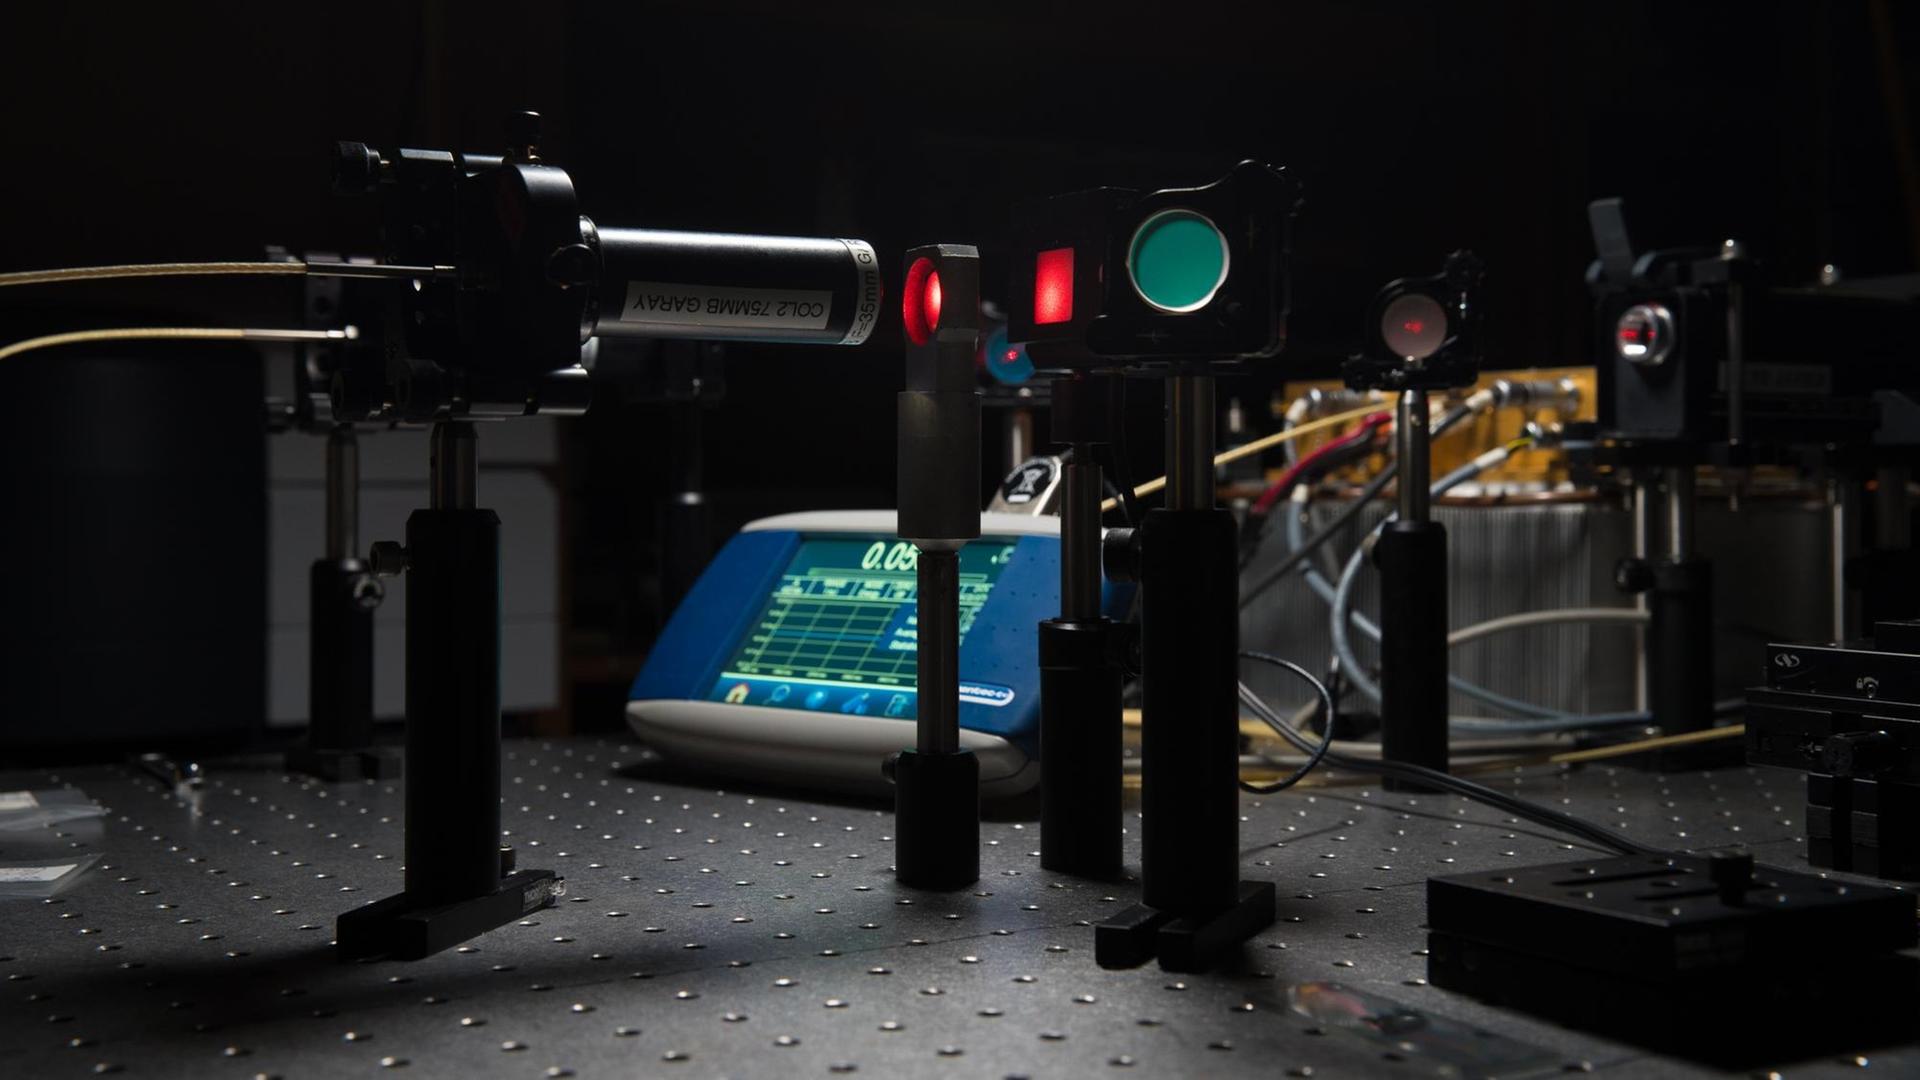 Laseranordnung zur Prüfung und Messung der Transparenz von keramischen Materialien